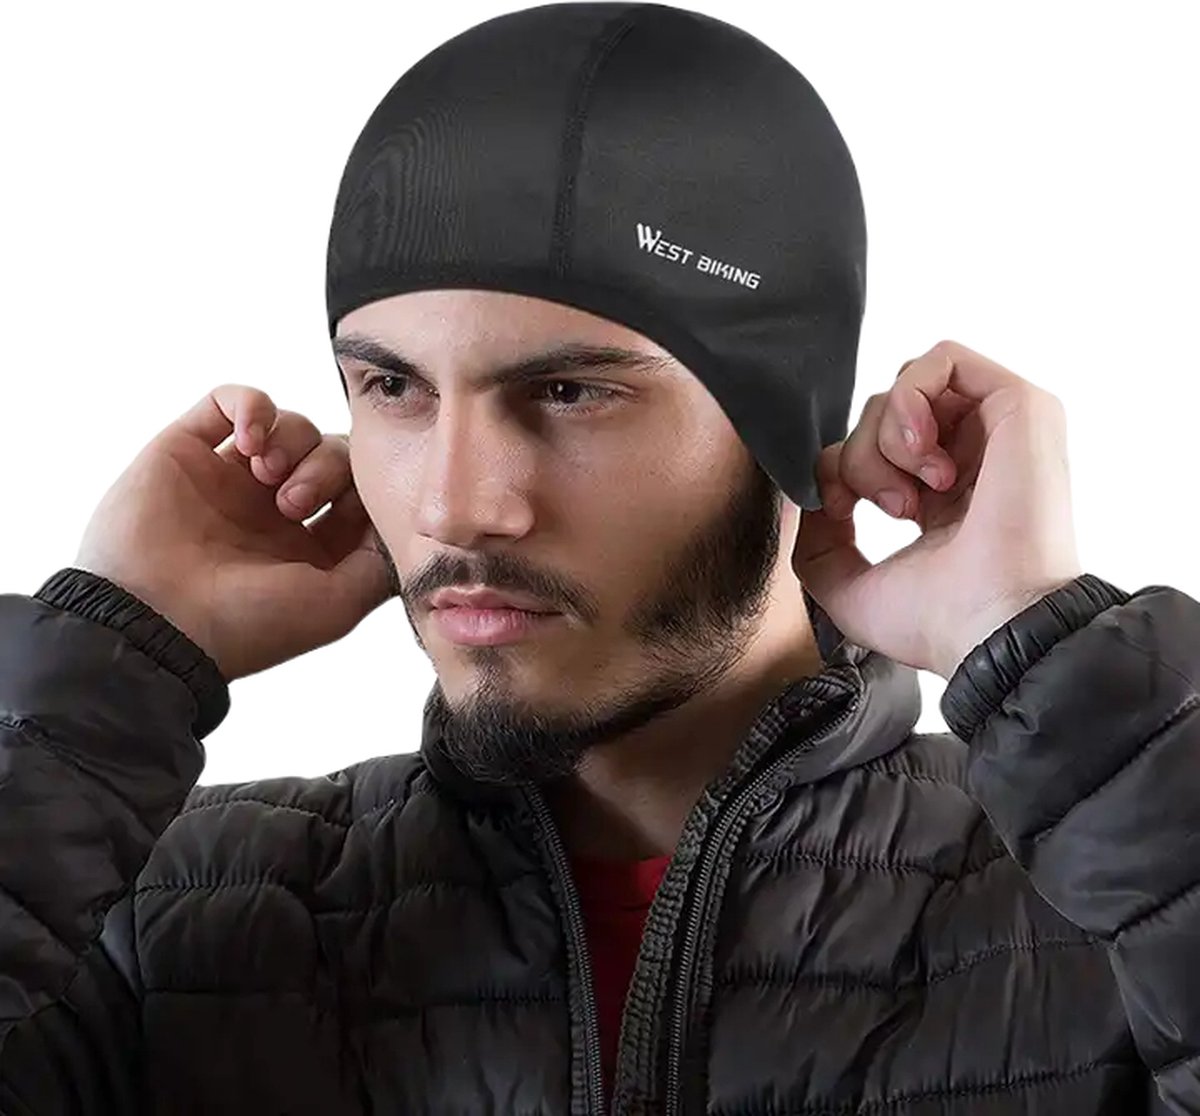 West biking - unisex - Sport Cap - Multi functioneel - Thermo Fleece Headwear - Cover - Onder je helm - Motor - Wielrennen - Hardlopen - Ski - Snowboard - Outdoor - Wintersport - Zwart - One Size